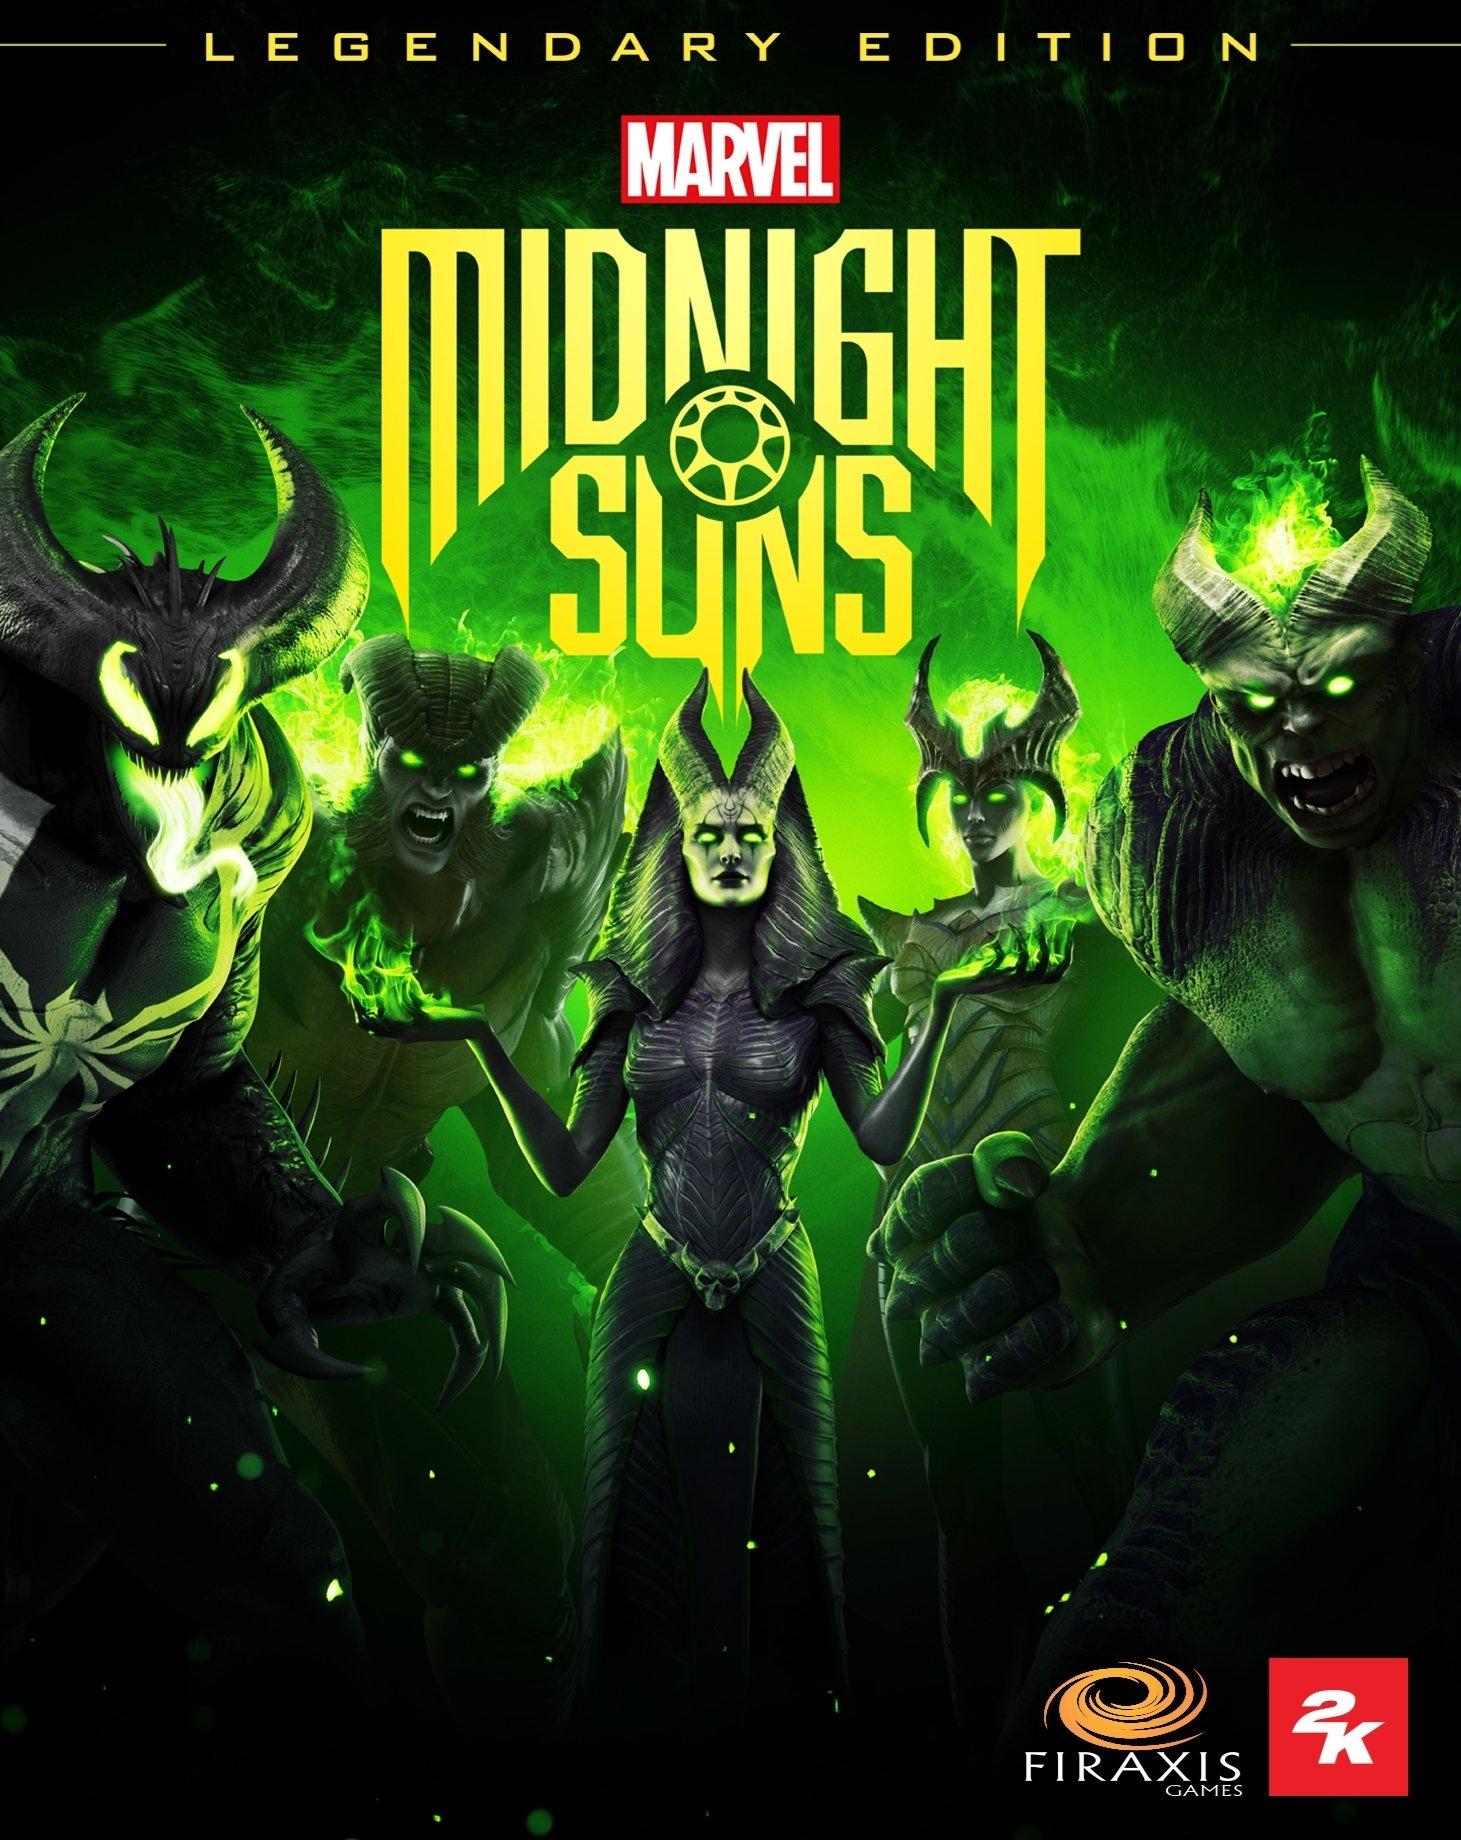 Marvel's Midnight Suns - Legendary Edition (EPIC) - Pre Order | ROW (bebe4a1c-1e28-49d5-8fa6-5623e3d181ab)